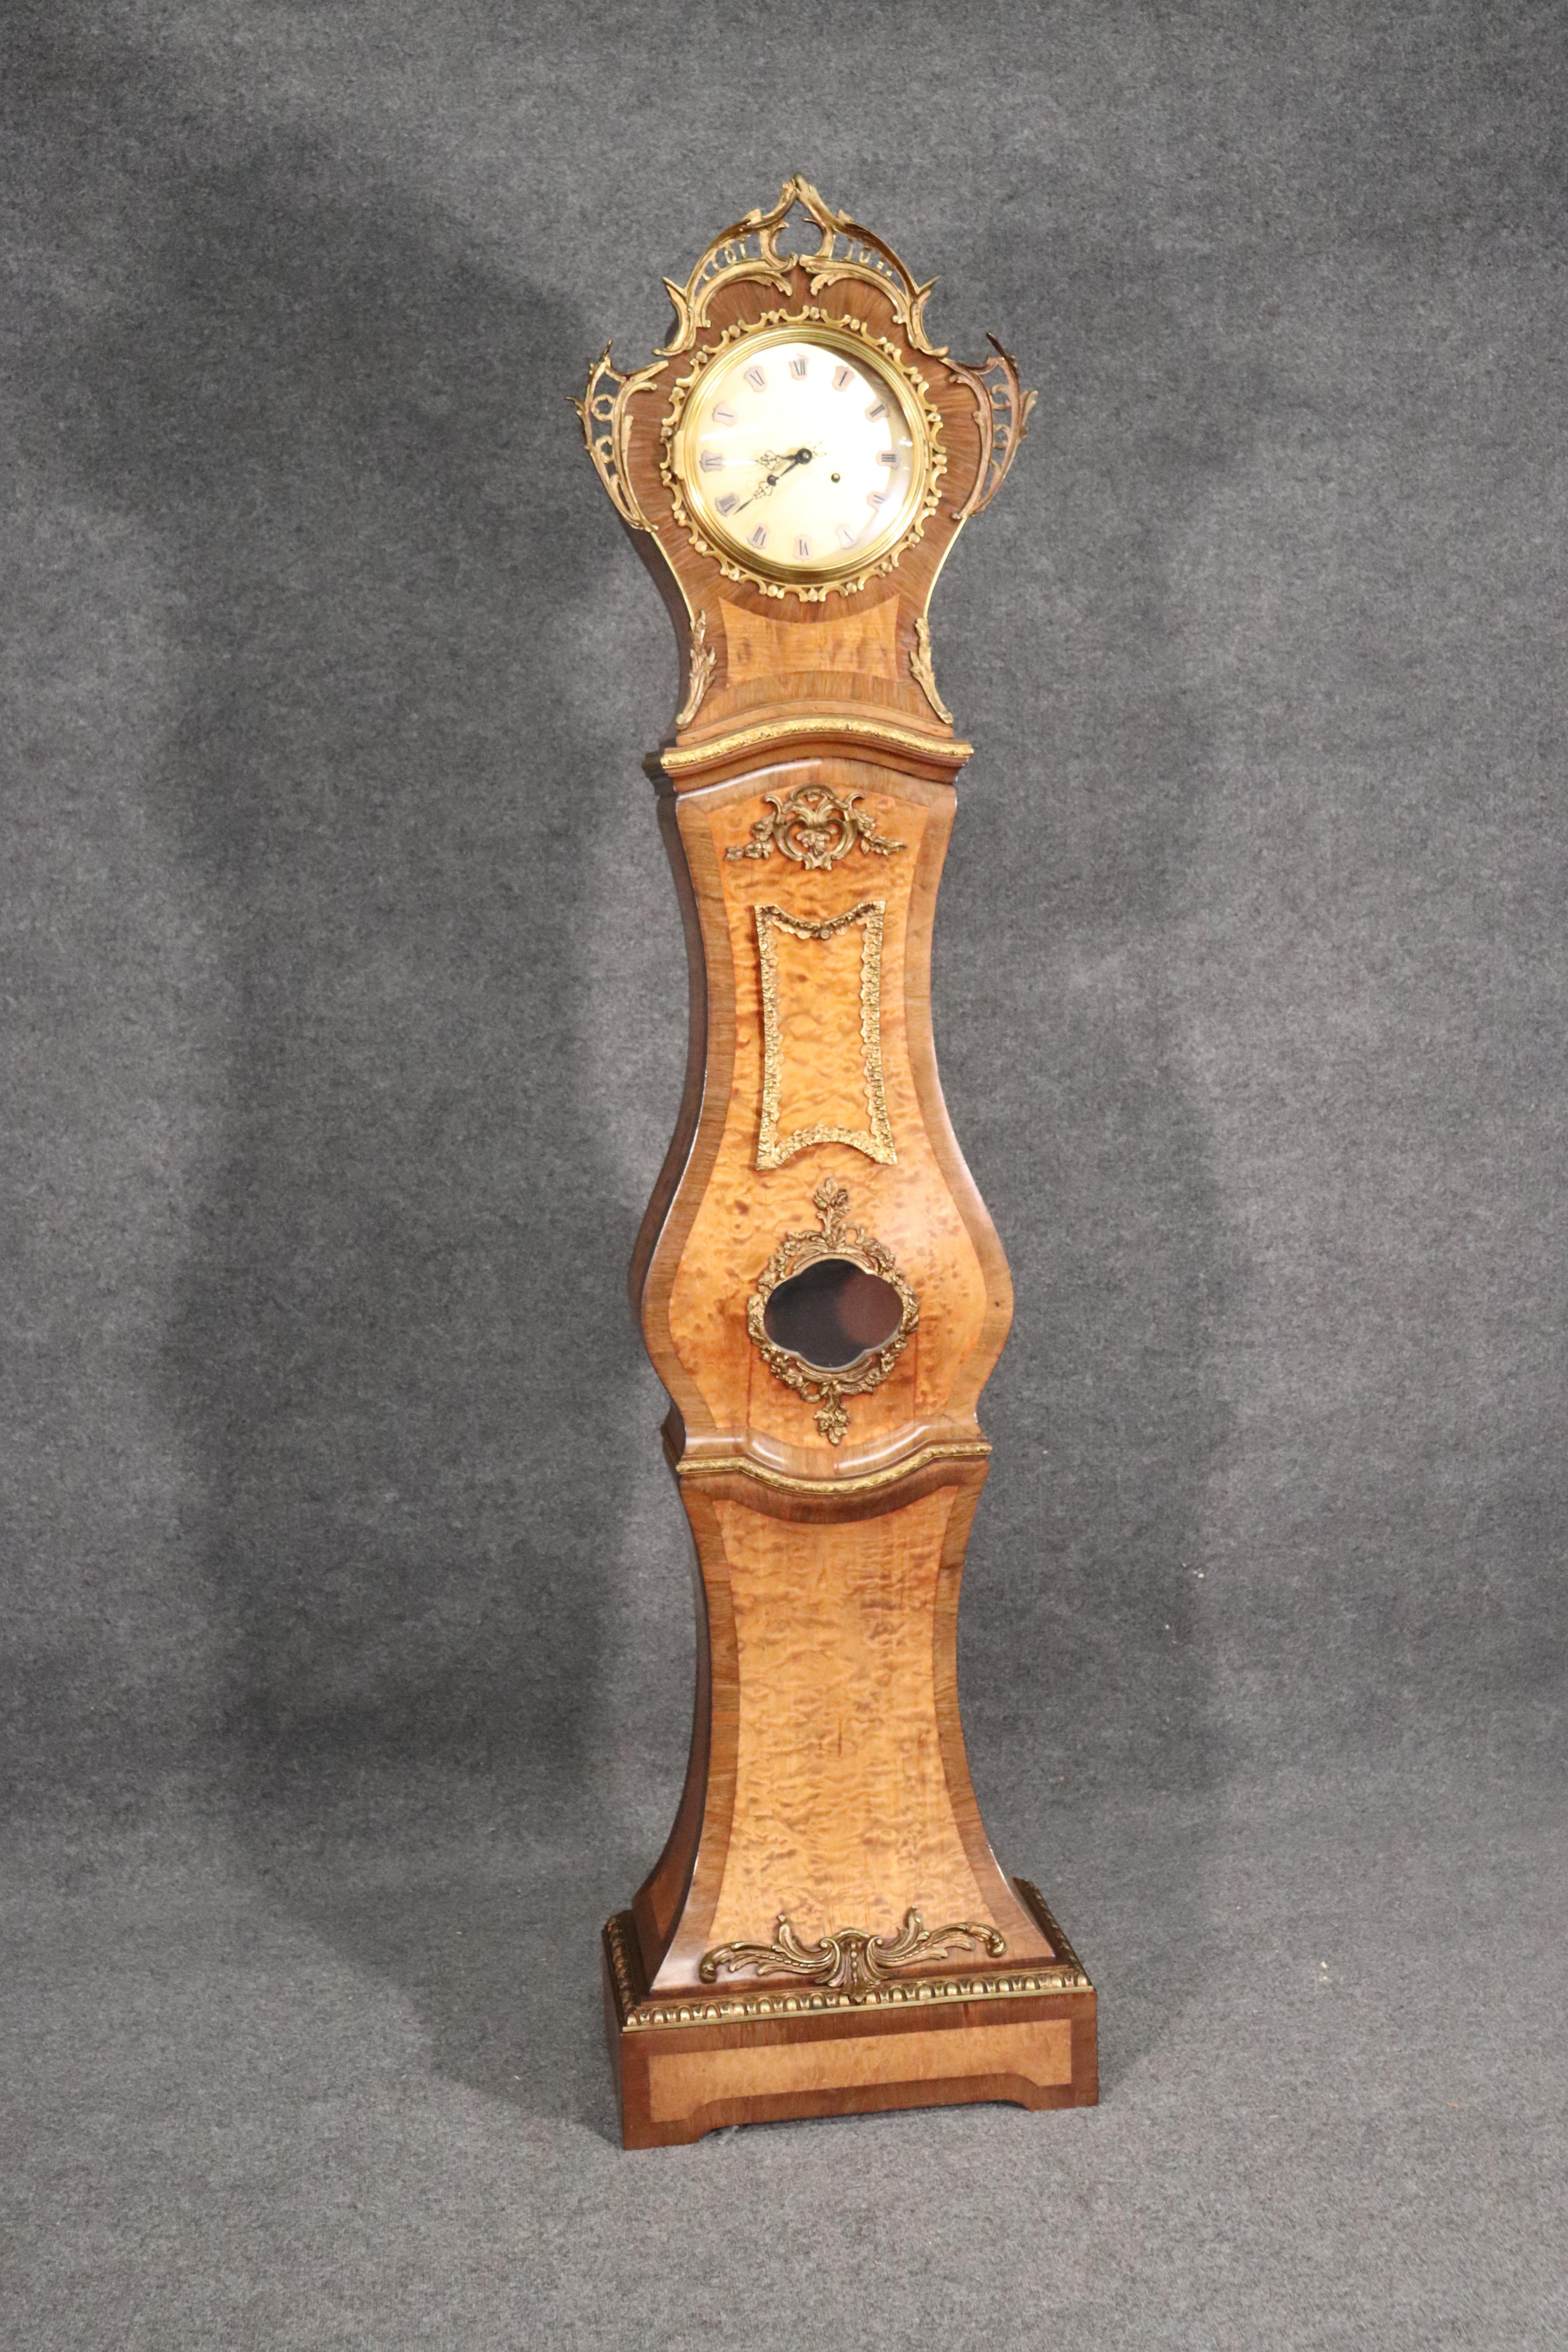 Dies ist eine schöne und äußerst dekorative Wurzelholz Französisch Stil Großvater Uhr. Die Uhr verfügt über ein Pendel und ein funktionierendes Uhrwerk. Das Gehäuse ist in ausgezeichnetem Zustand und hat eine feine, massive Gussbronze Ormolu. Die